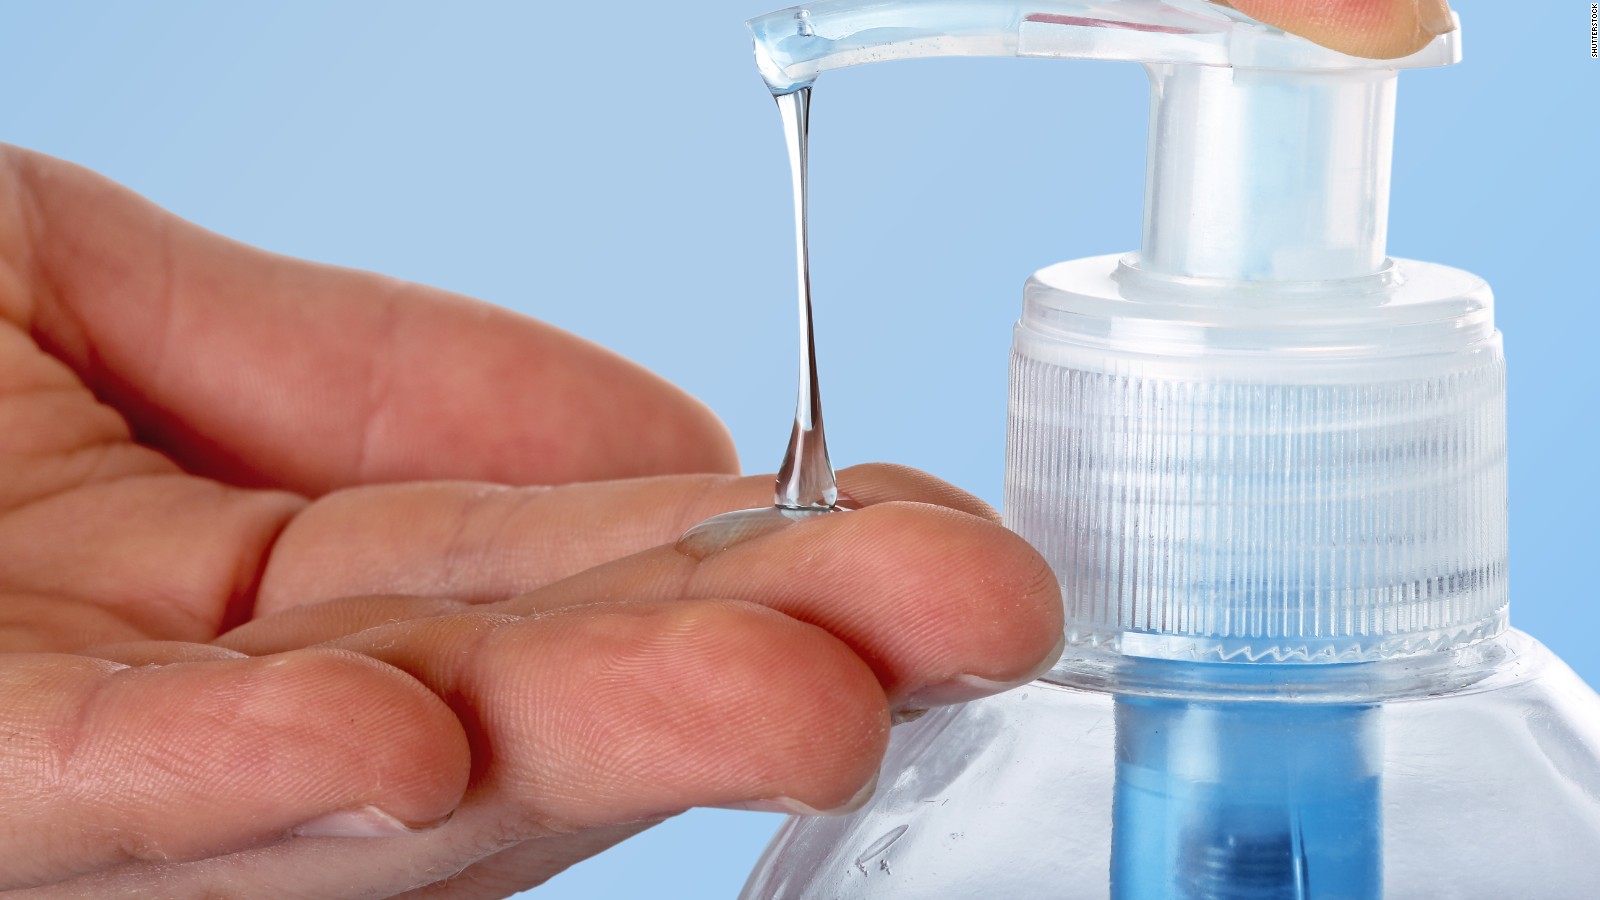 Để phòng lây nhiễm virus Corana, người dân cần đeo khẩu trang, vệ sinh cá nhân bằng cách rửa tay thường xuyên bằng xà phòng hoặc dung dịch rửa tay có chứa cồn